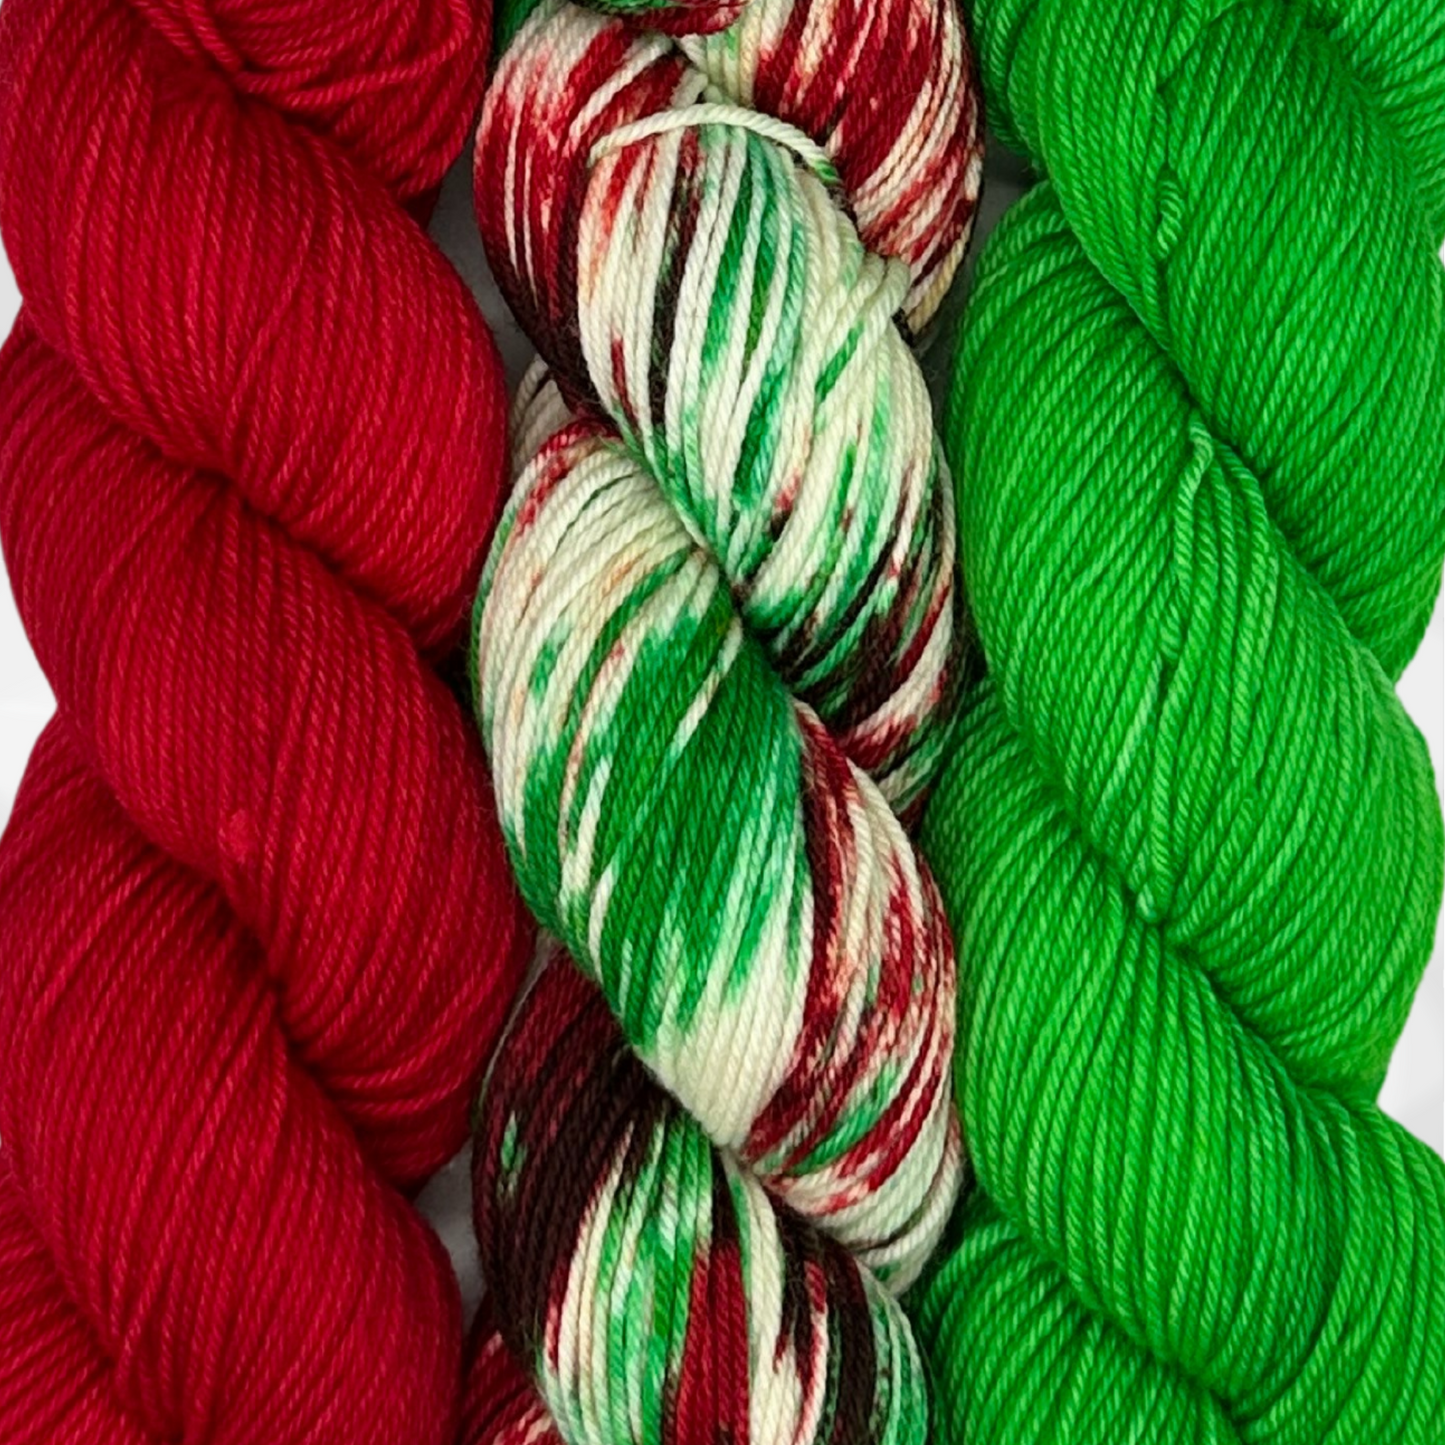 3 Skein Yarn Bundle - Simply Christmas